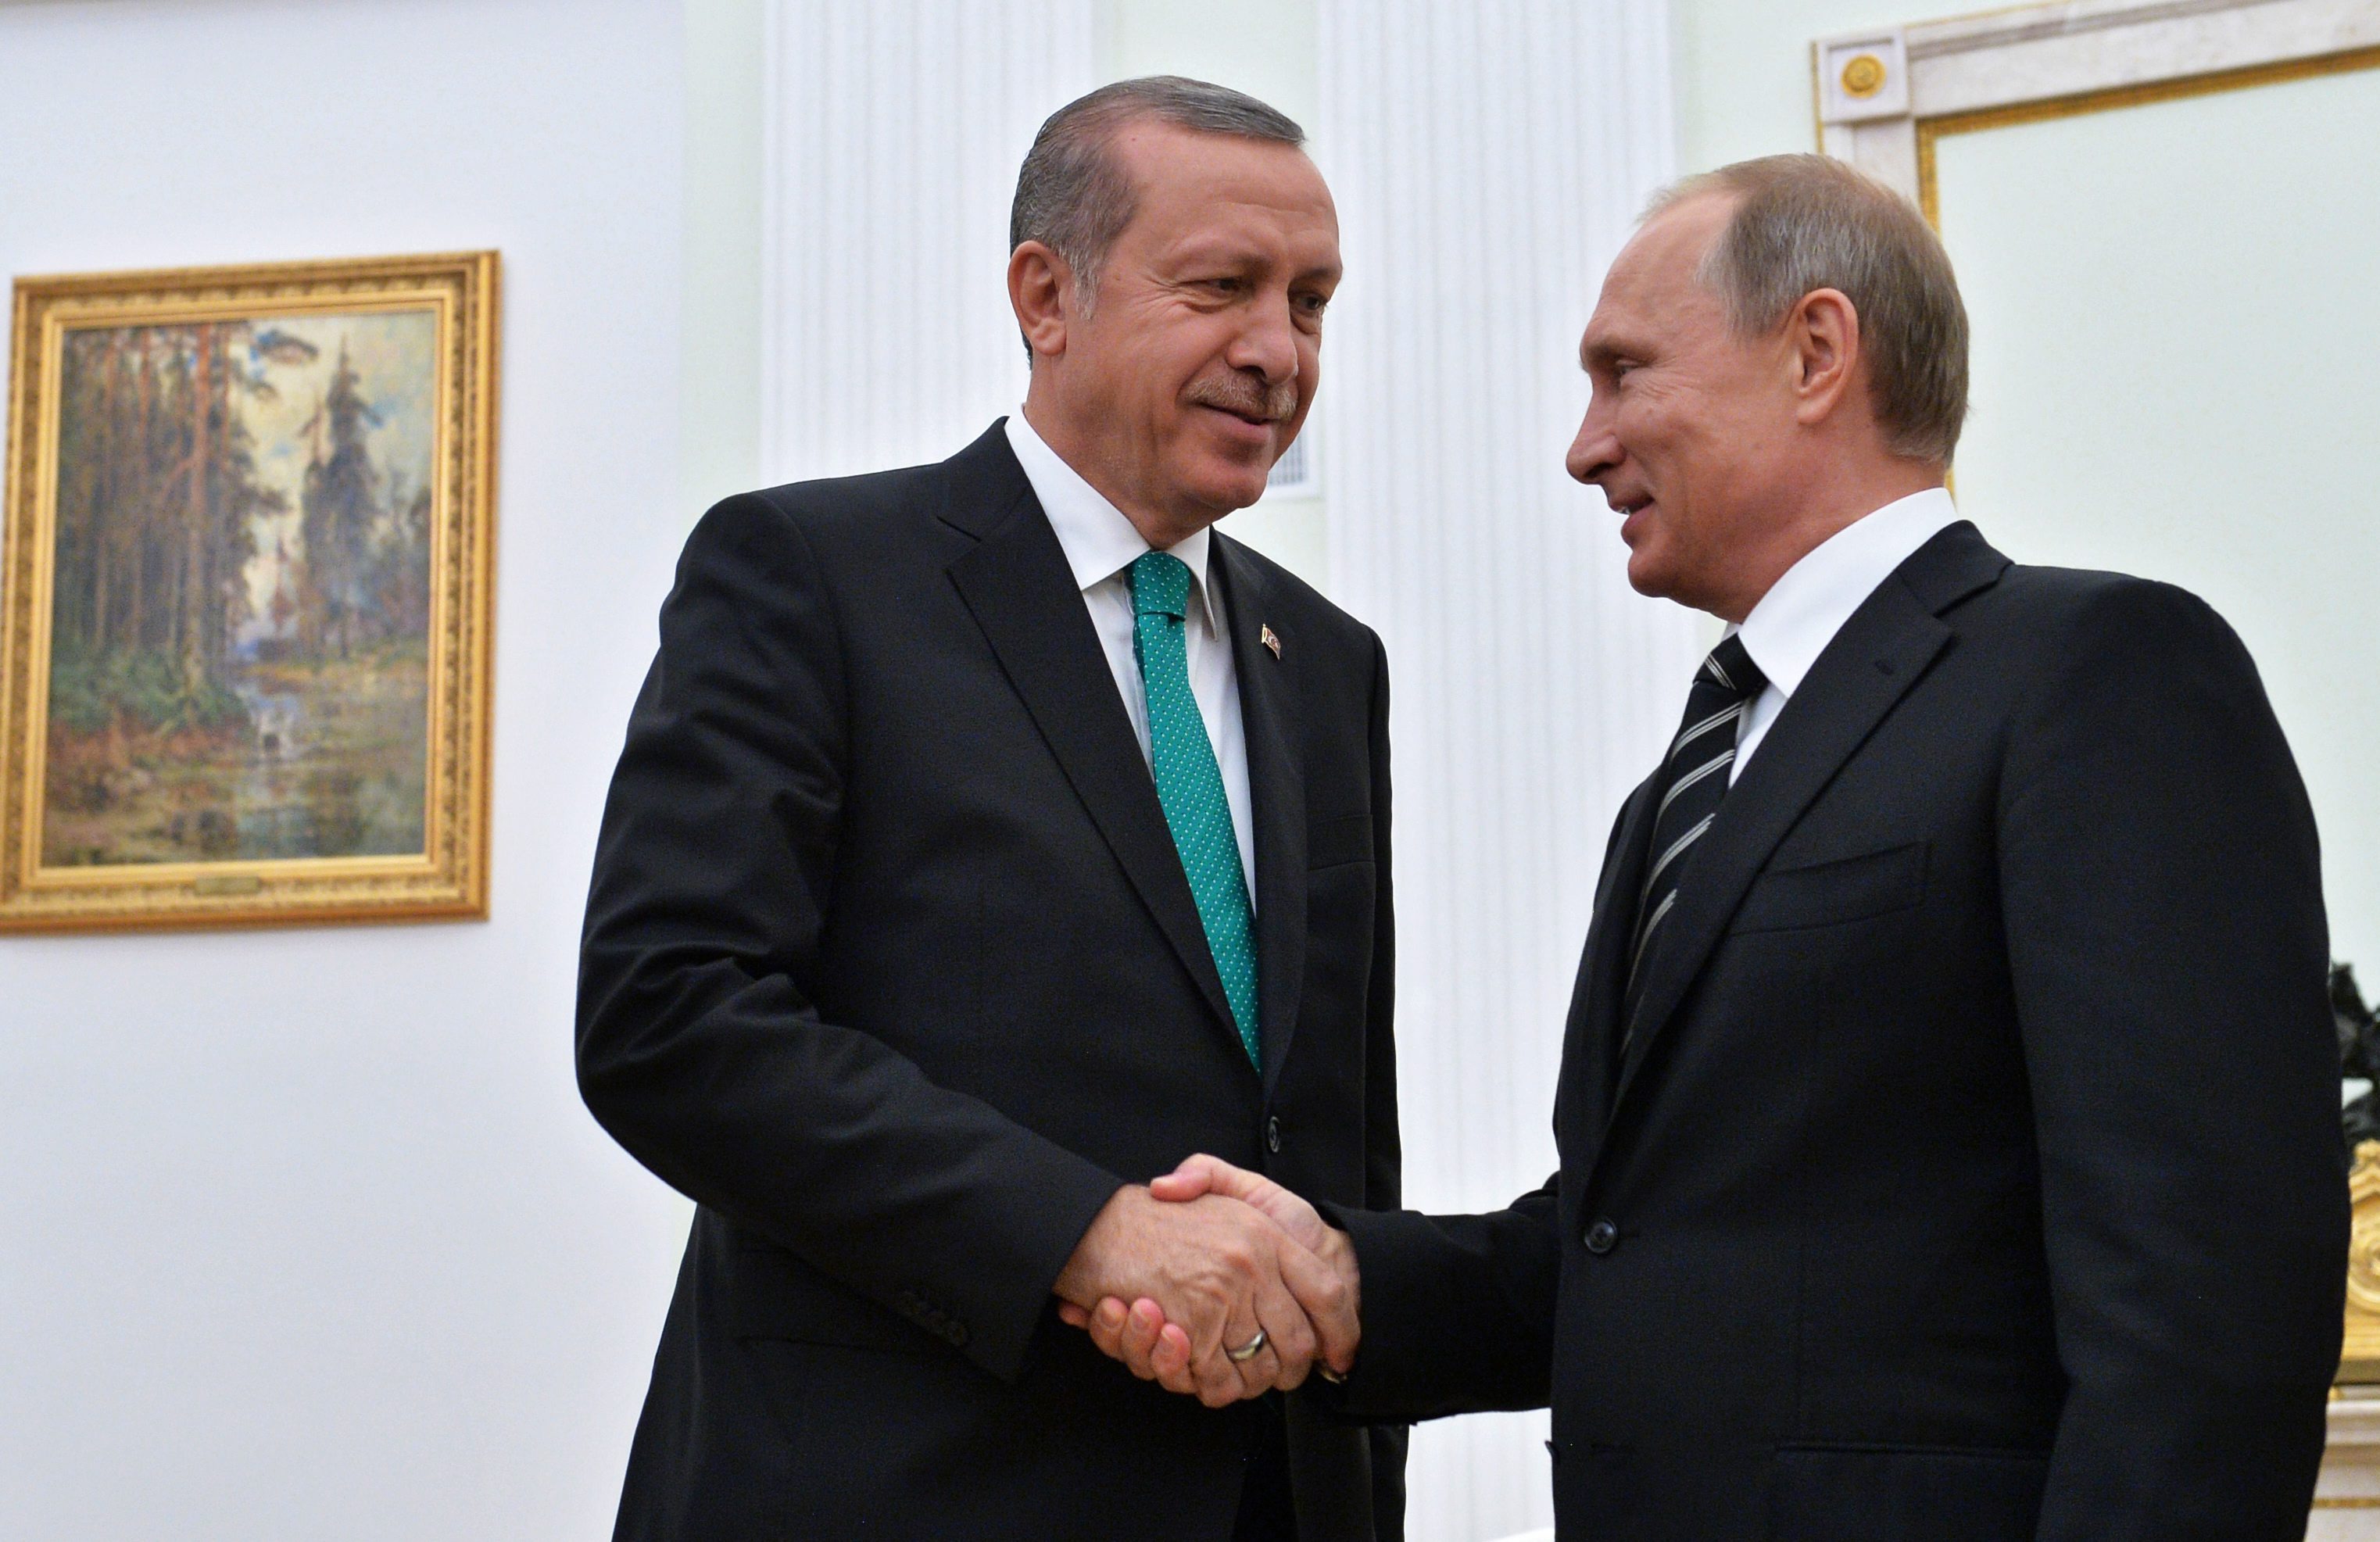 Ο Πούτιν συνεχάρη τον Ερντογάν για τη νίκη του στο δημοψήφισμα